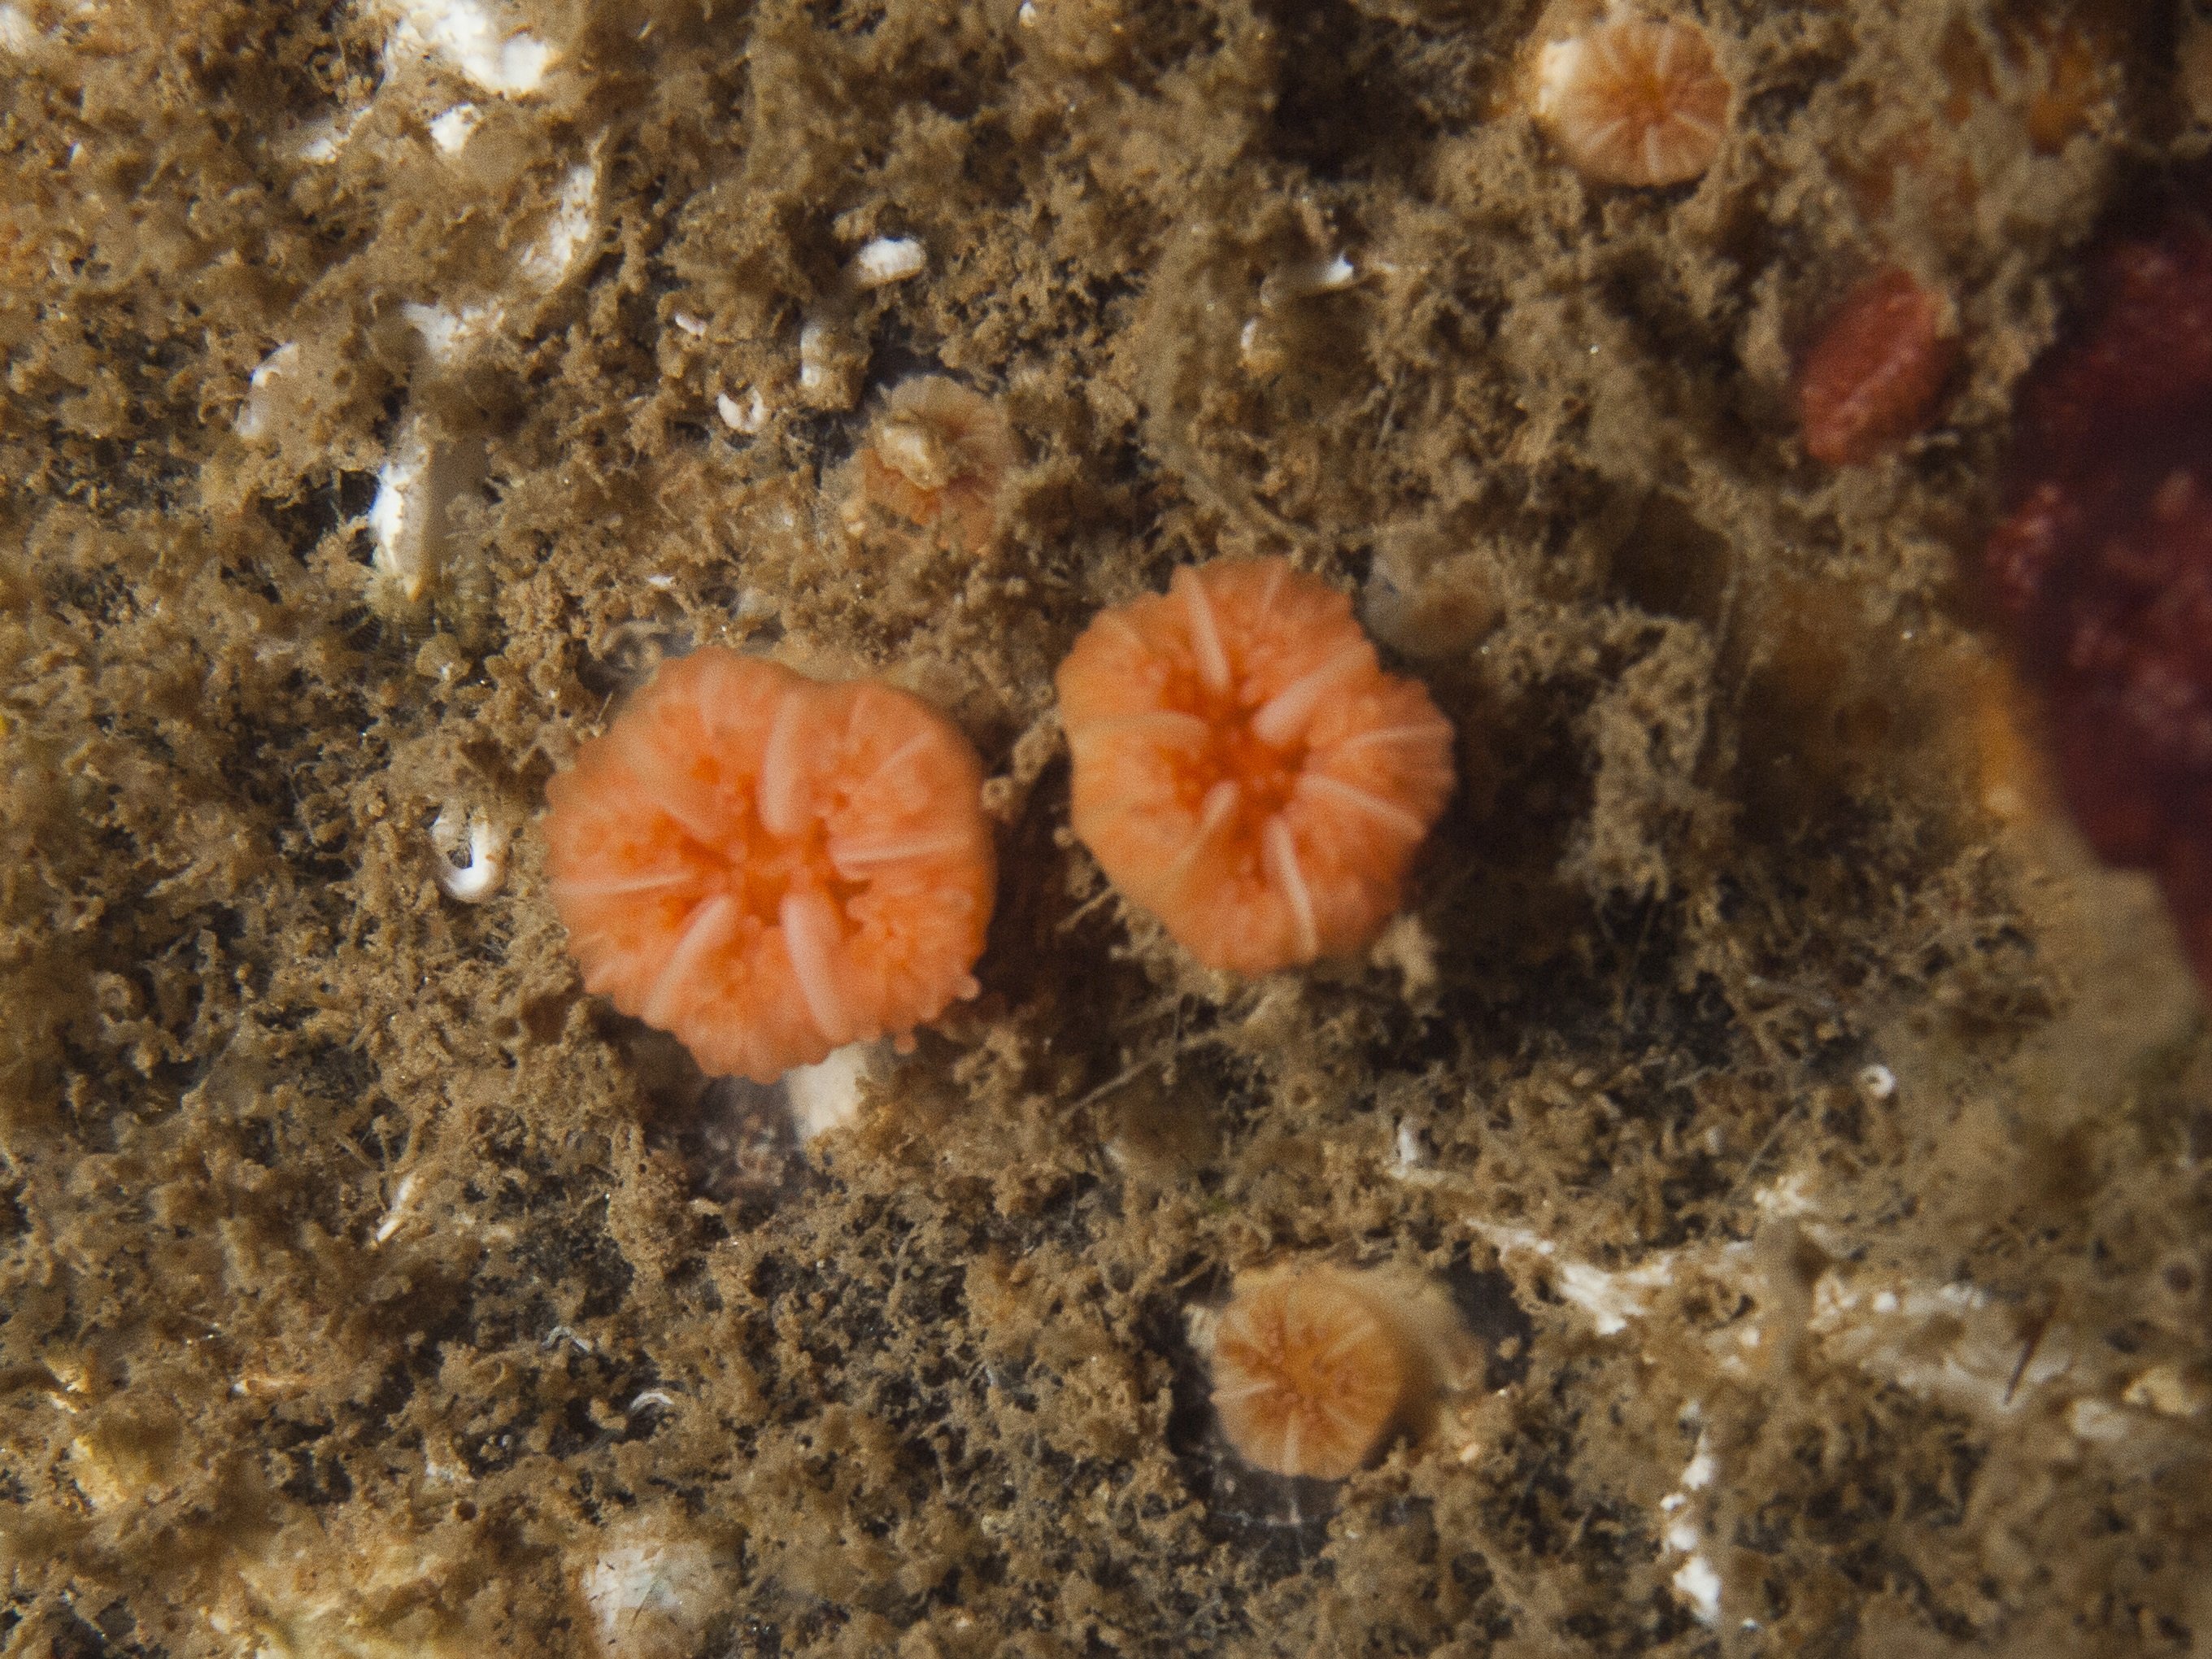 Coral solitario Balanophyllia regía